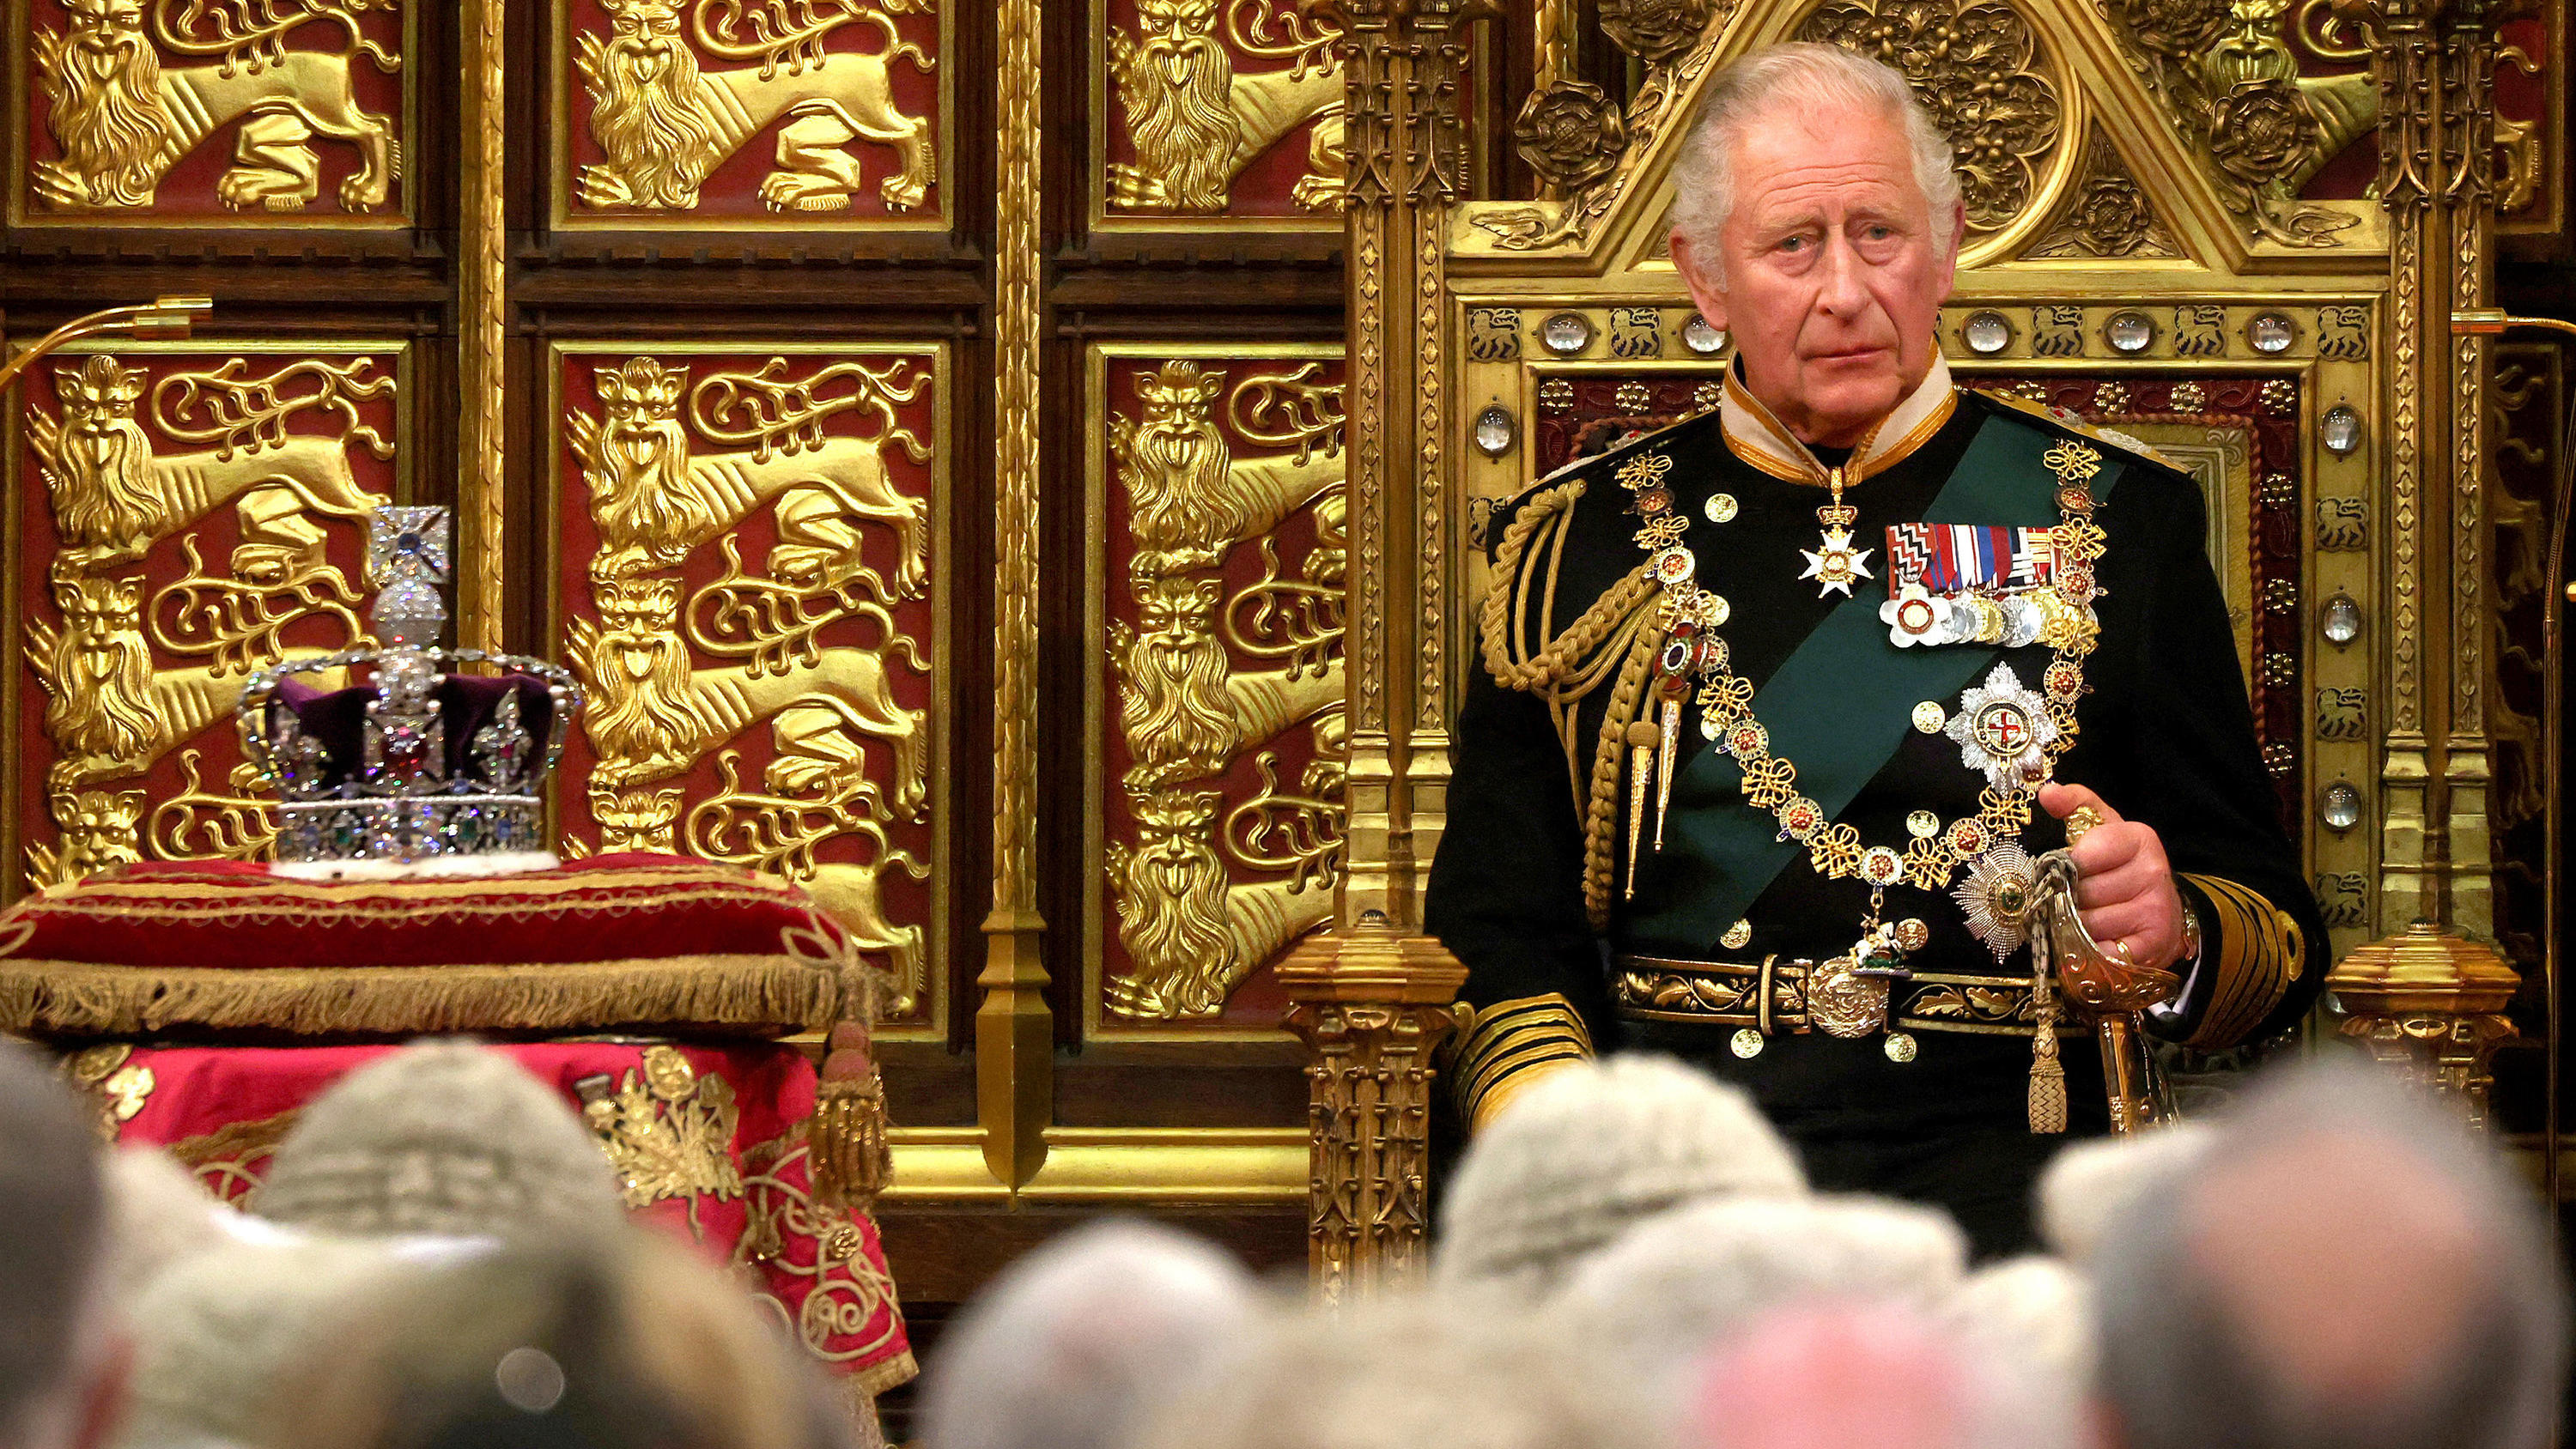 ARCHIV - 10.05.2022, Großbritannien, London: Charles, Prinz von Wales, verliest die Rede der Königin zur Eröffnung der neuen Sitzungsperiode des Parlaments im House of Lords - neben ihm liegt die Imperial State Crown auf einem Kissen. Der britische K